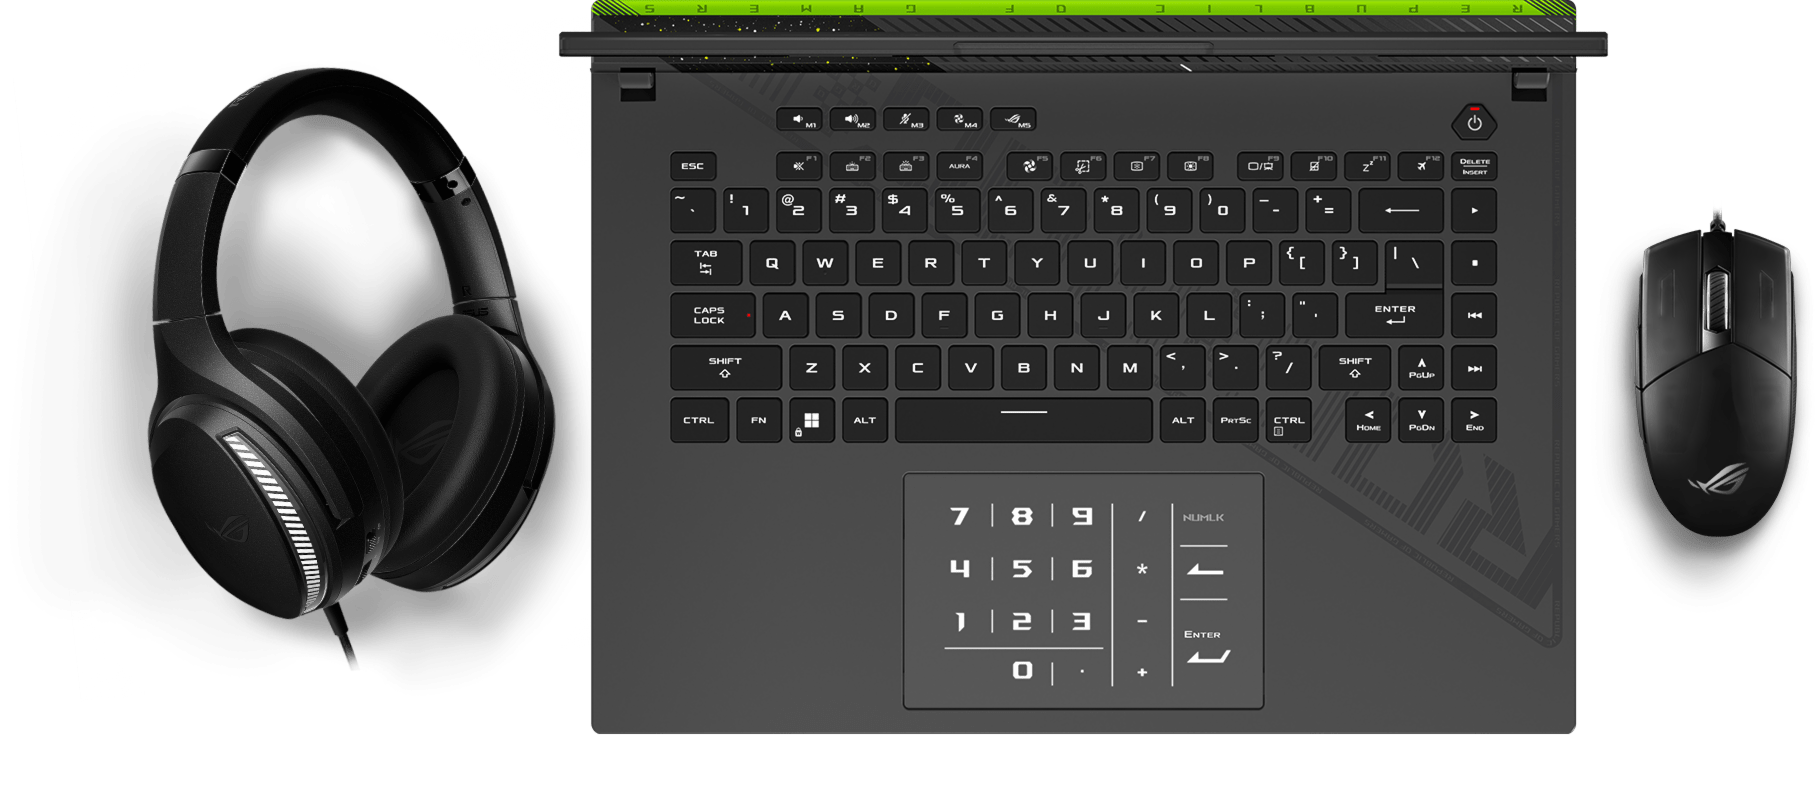 Клавиатура с визуальными эффектами подсветки Aura, синхронизированными с подсветкой мышки и гарнитуры.